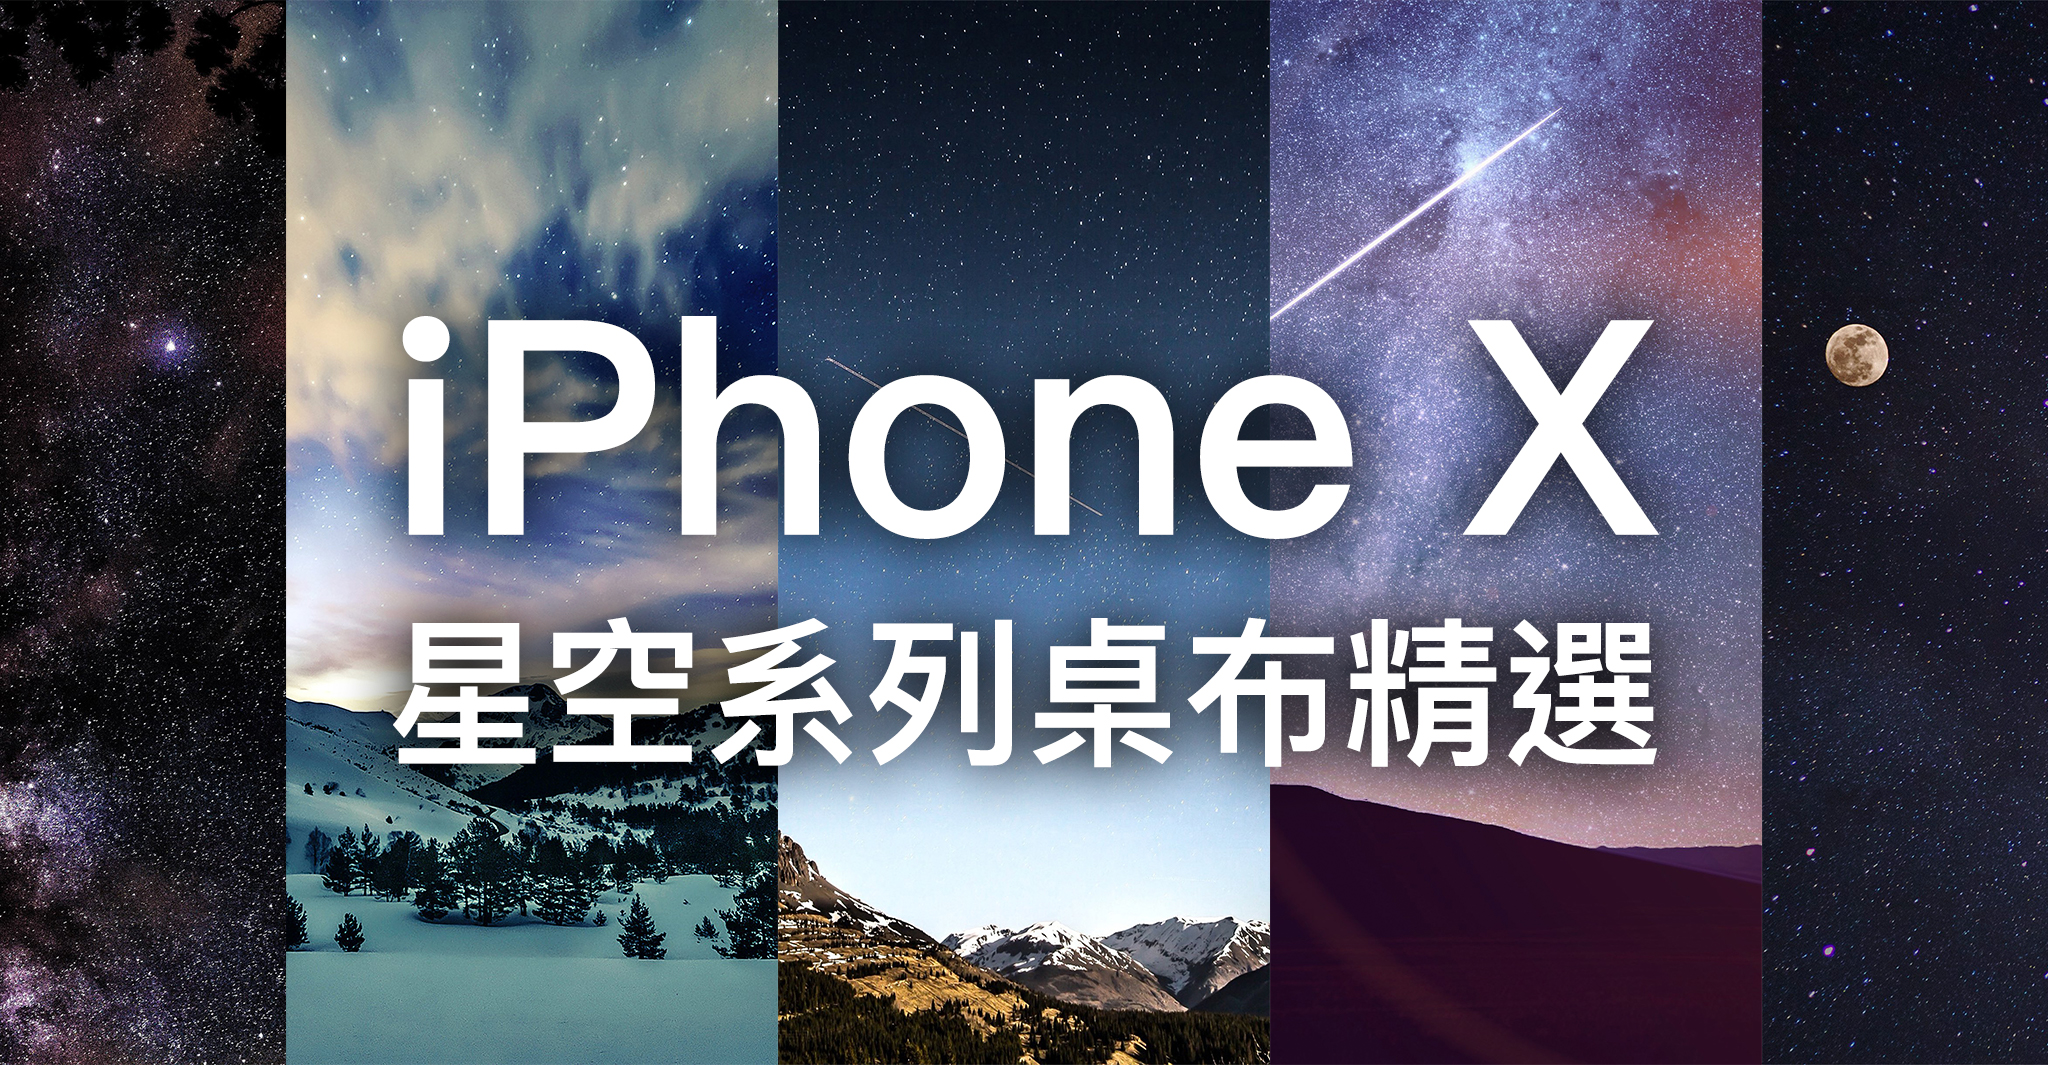 Iphone 桌布下載彙整 蘋果仁 你的科技媒體